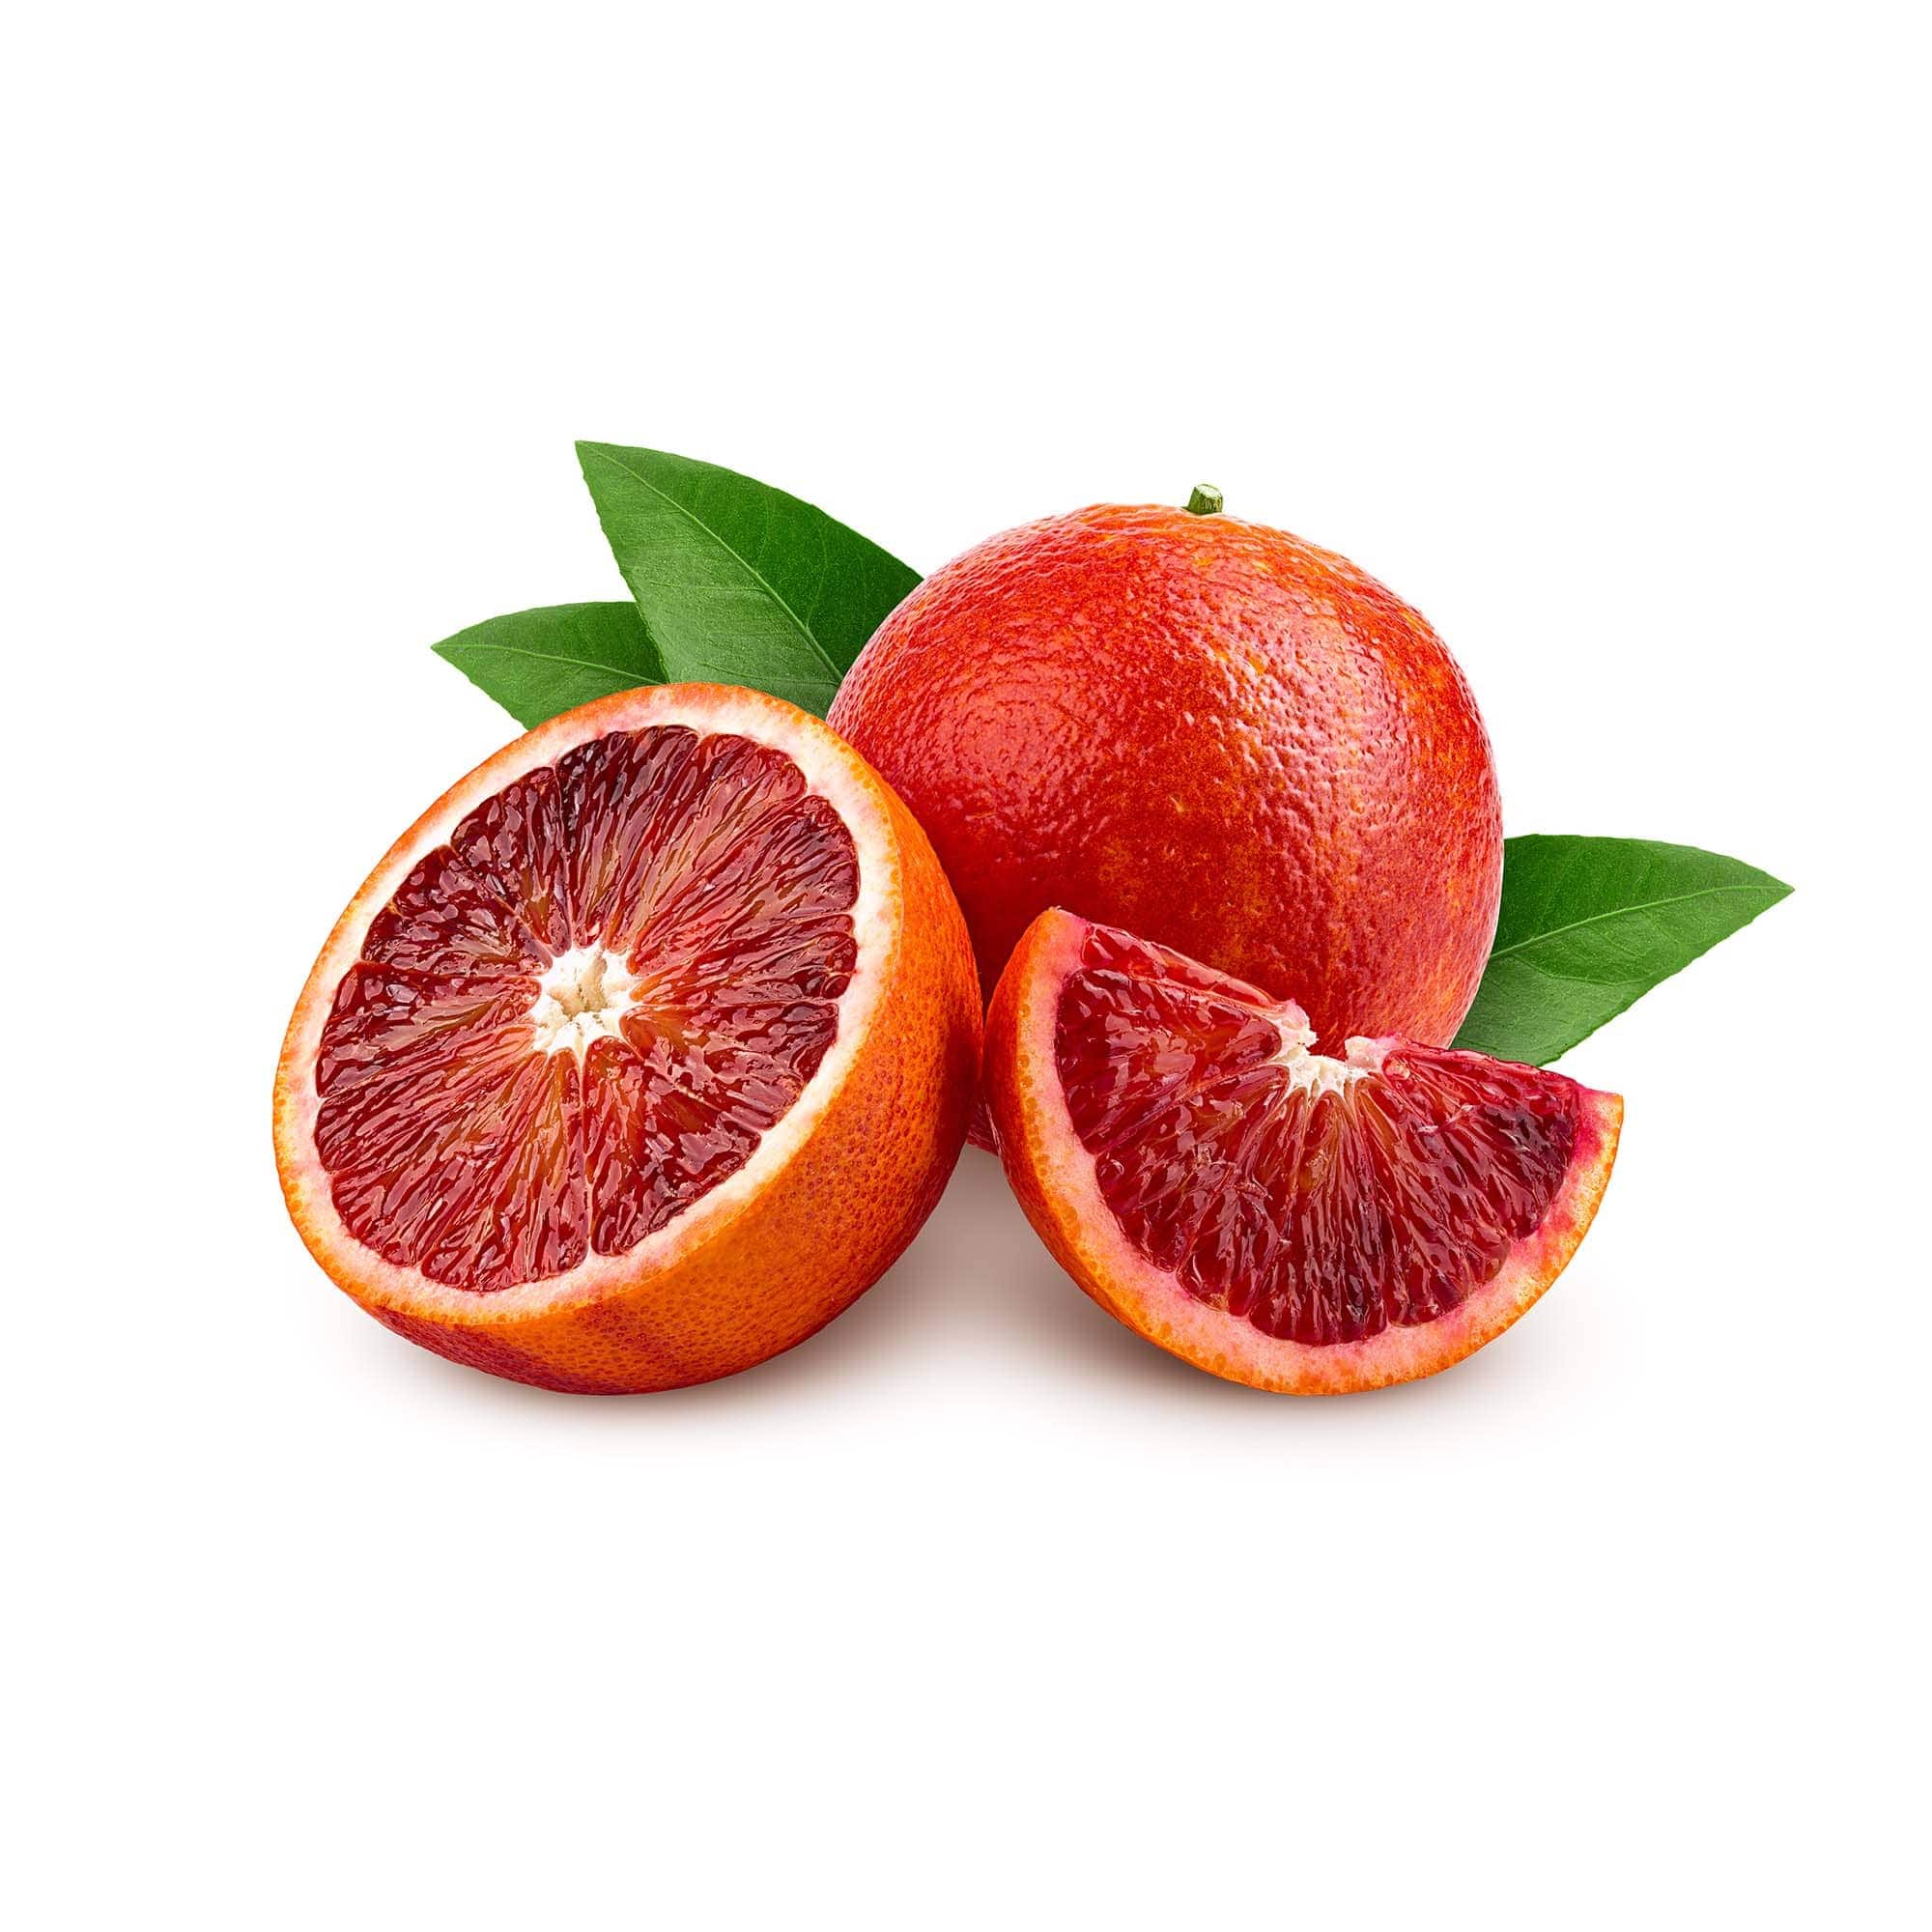 Orange - Blood | Exotic Fruits - Rare & Tropical Exotic Fruit Shop UK